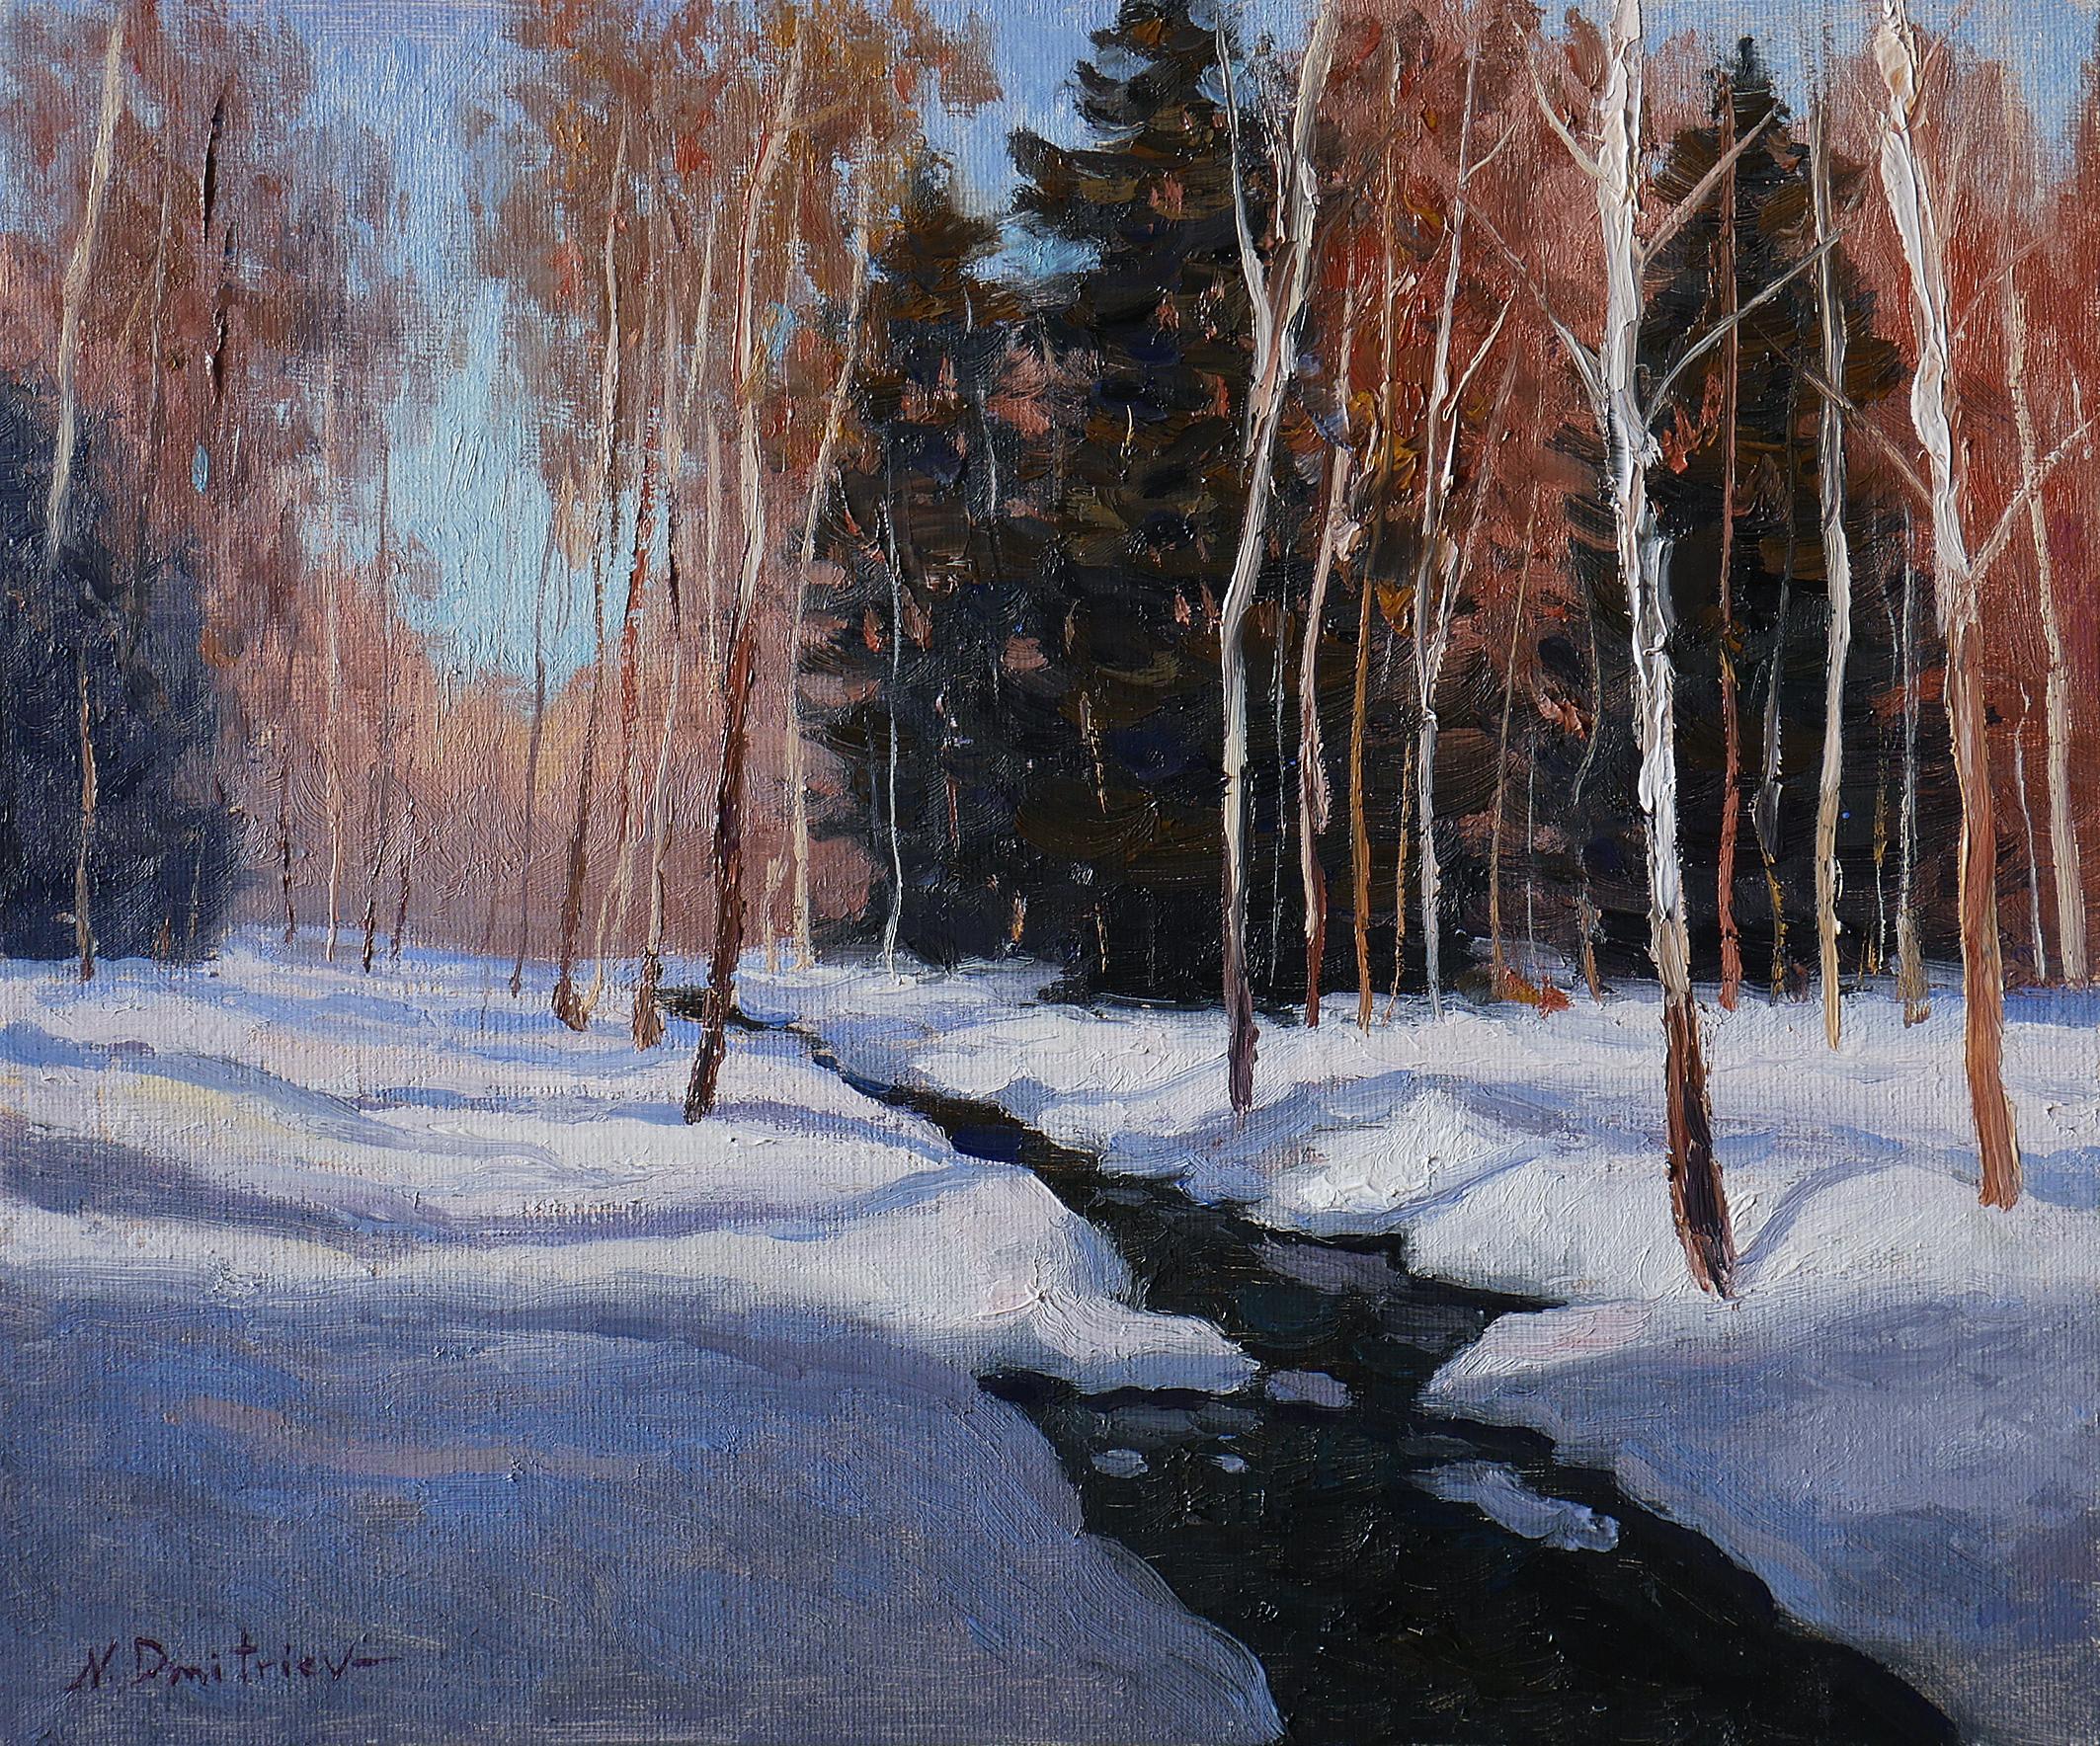 The Forest Brook - paysage original ensoleillé, peinture d'hiver